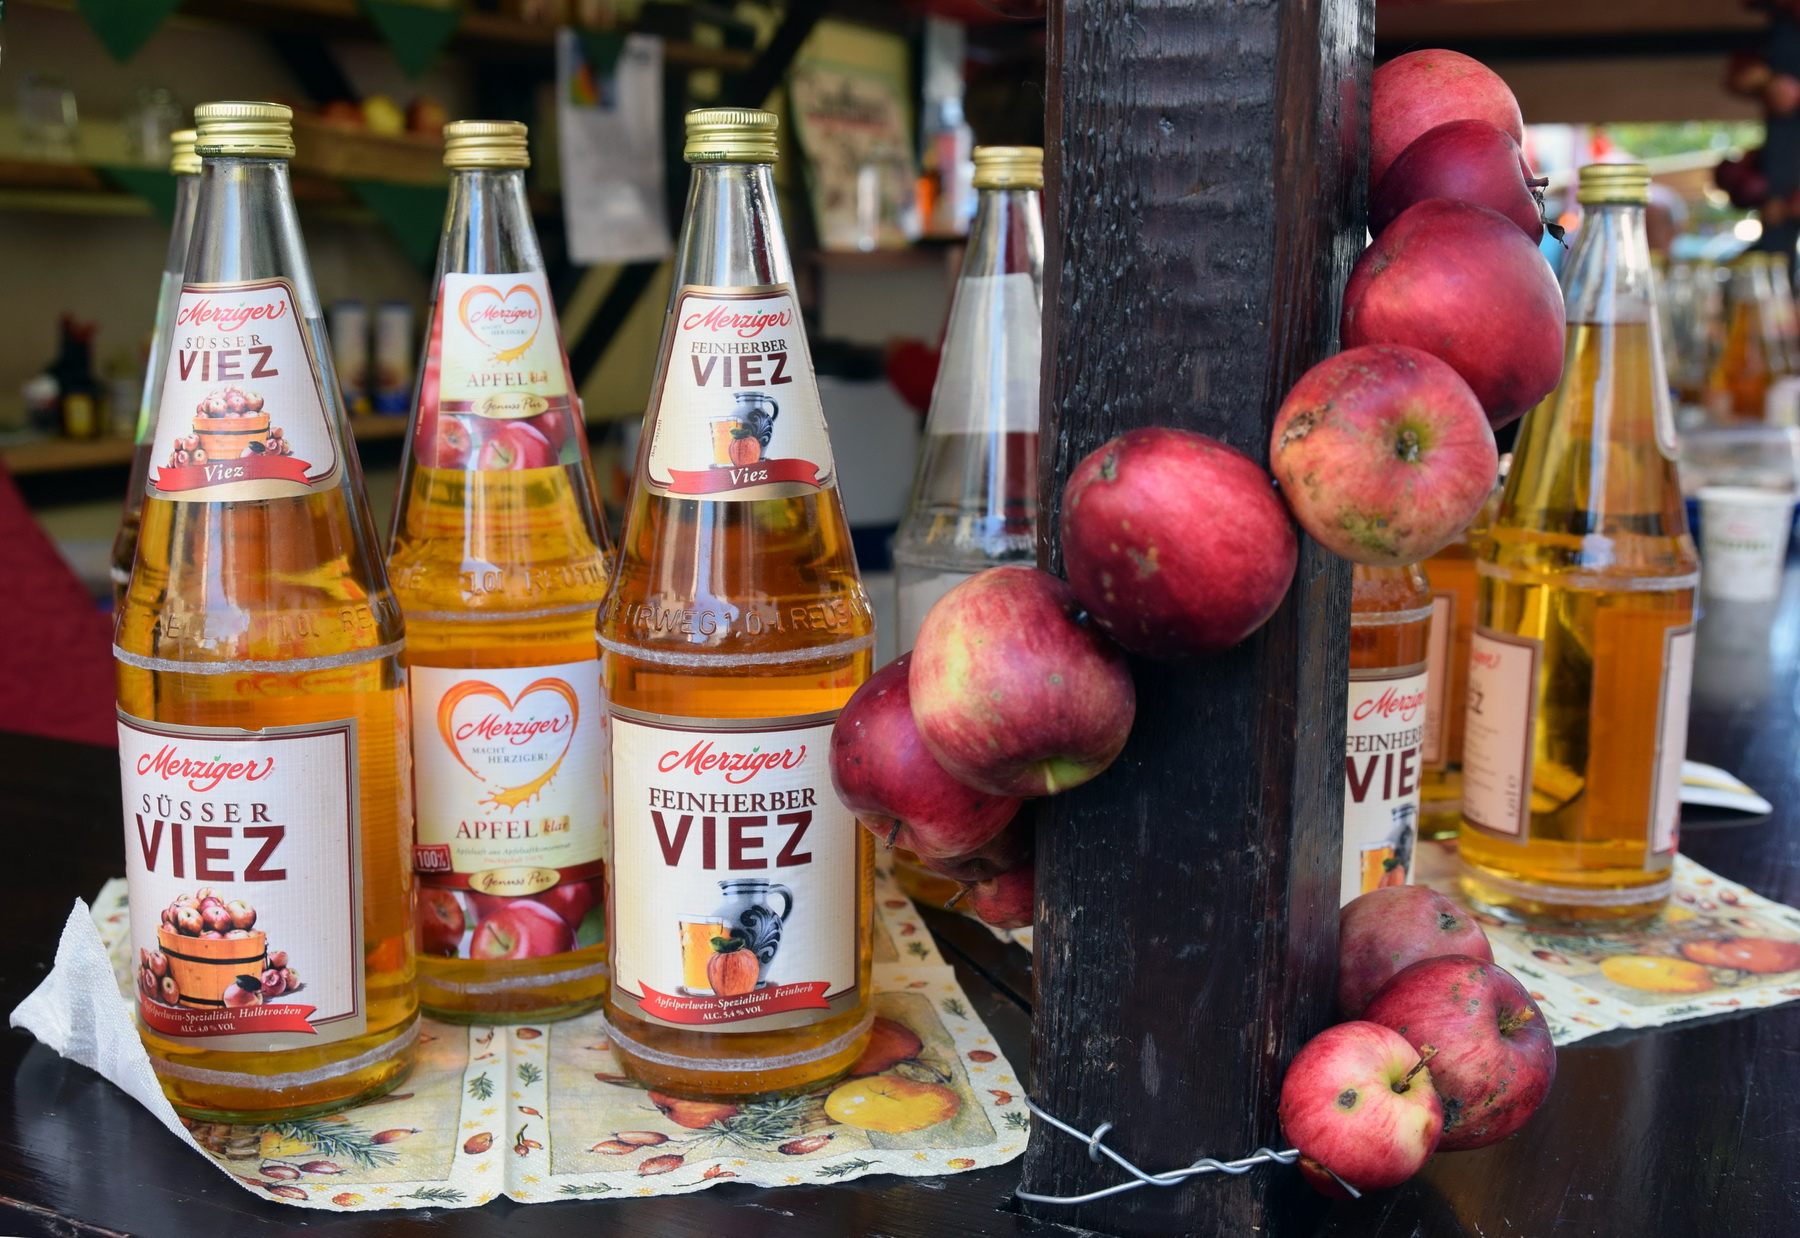 Das Foto zeigt Flaschen sowie dekorierte Äpfel auf dem Viezfest.